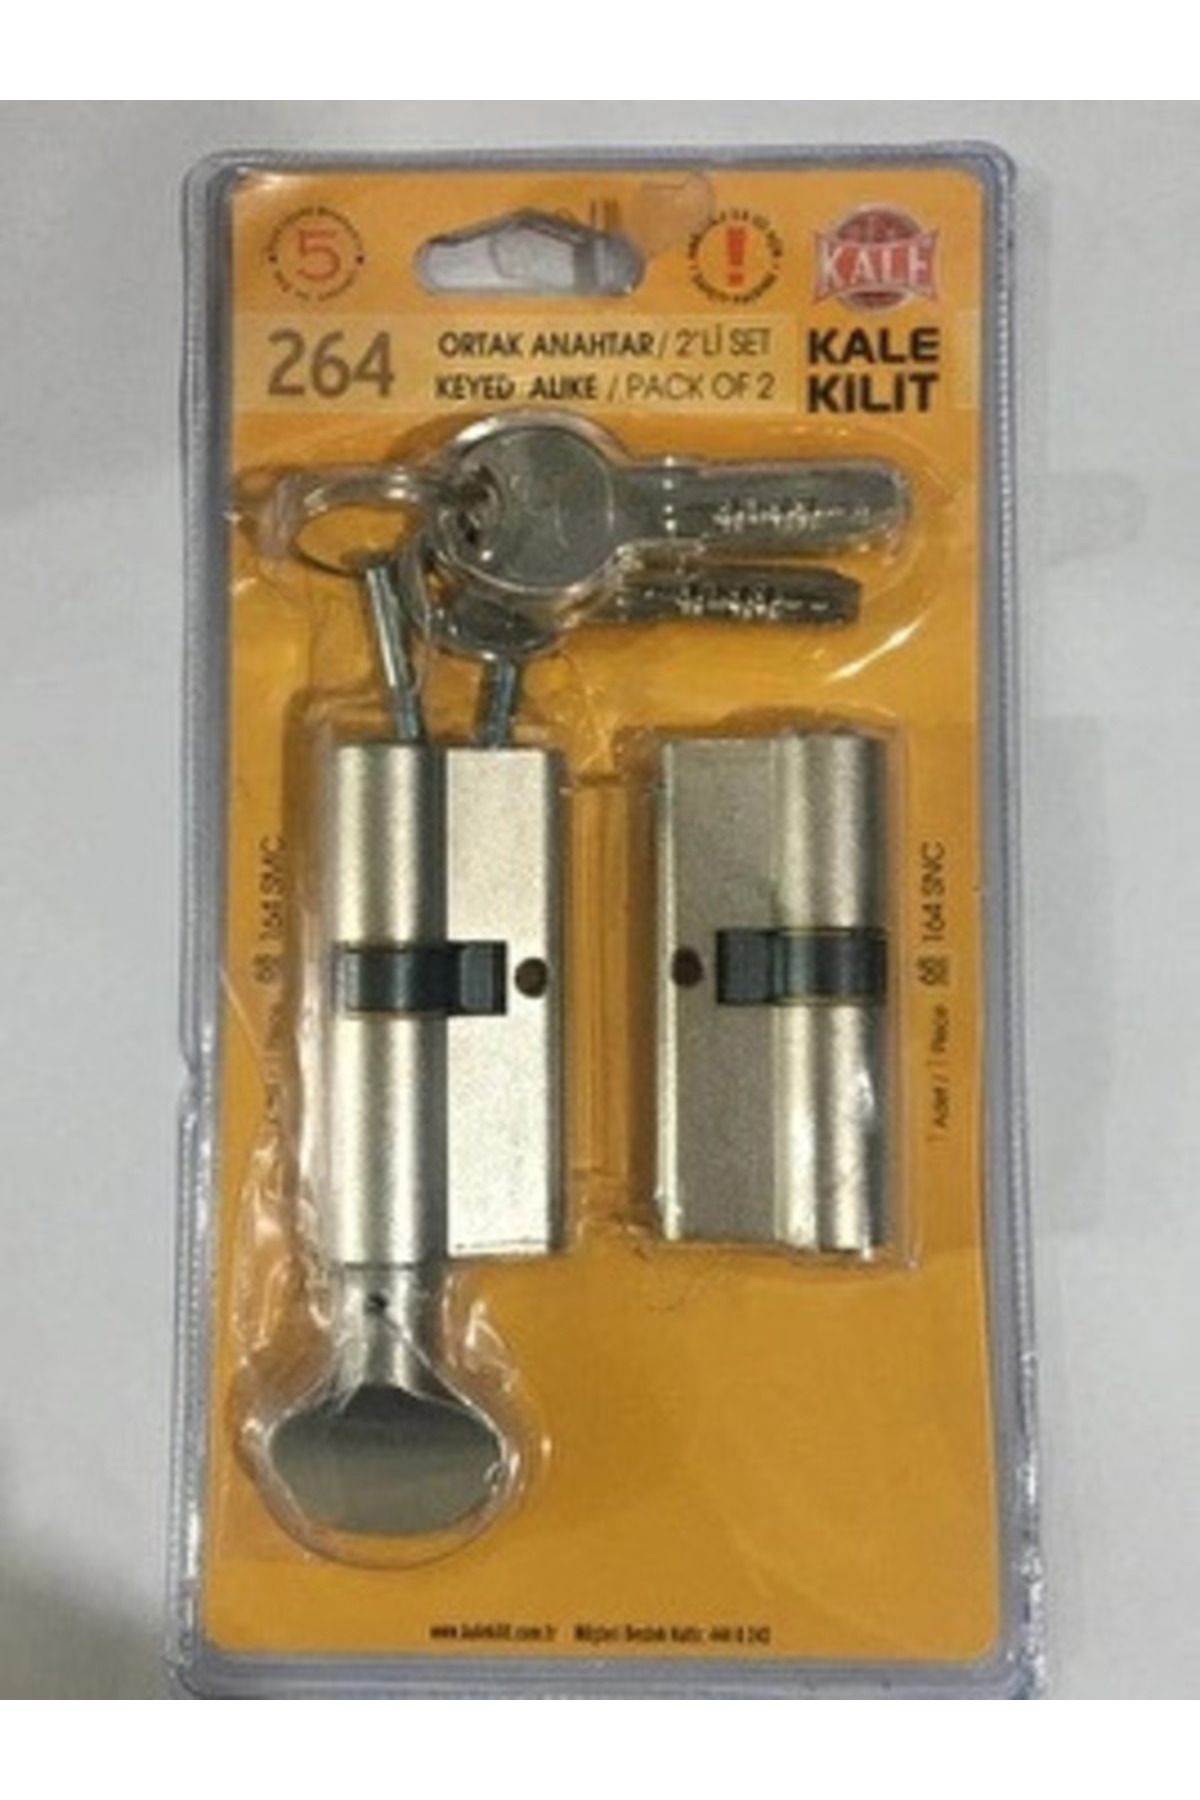 Kale Kilit Ortak Anahtar 2'li Set 68mm 164smc